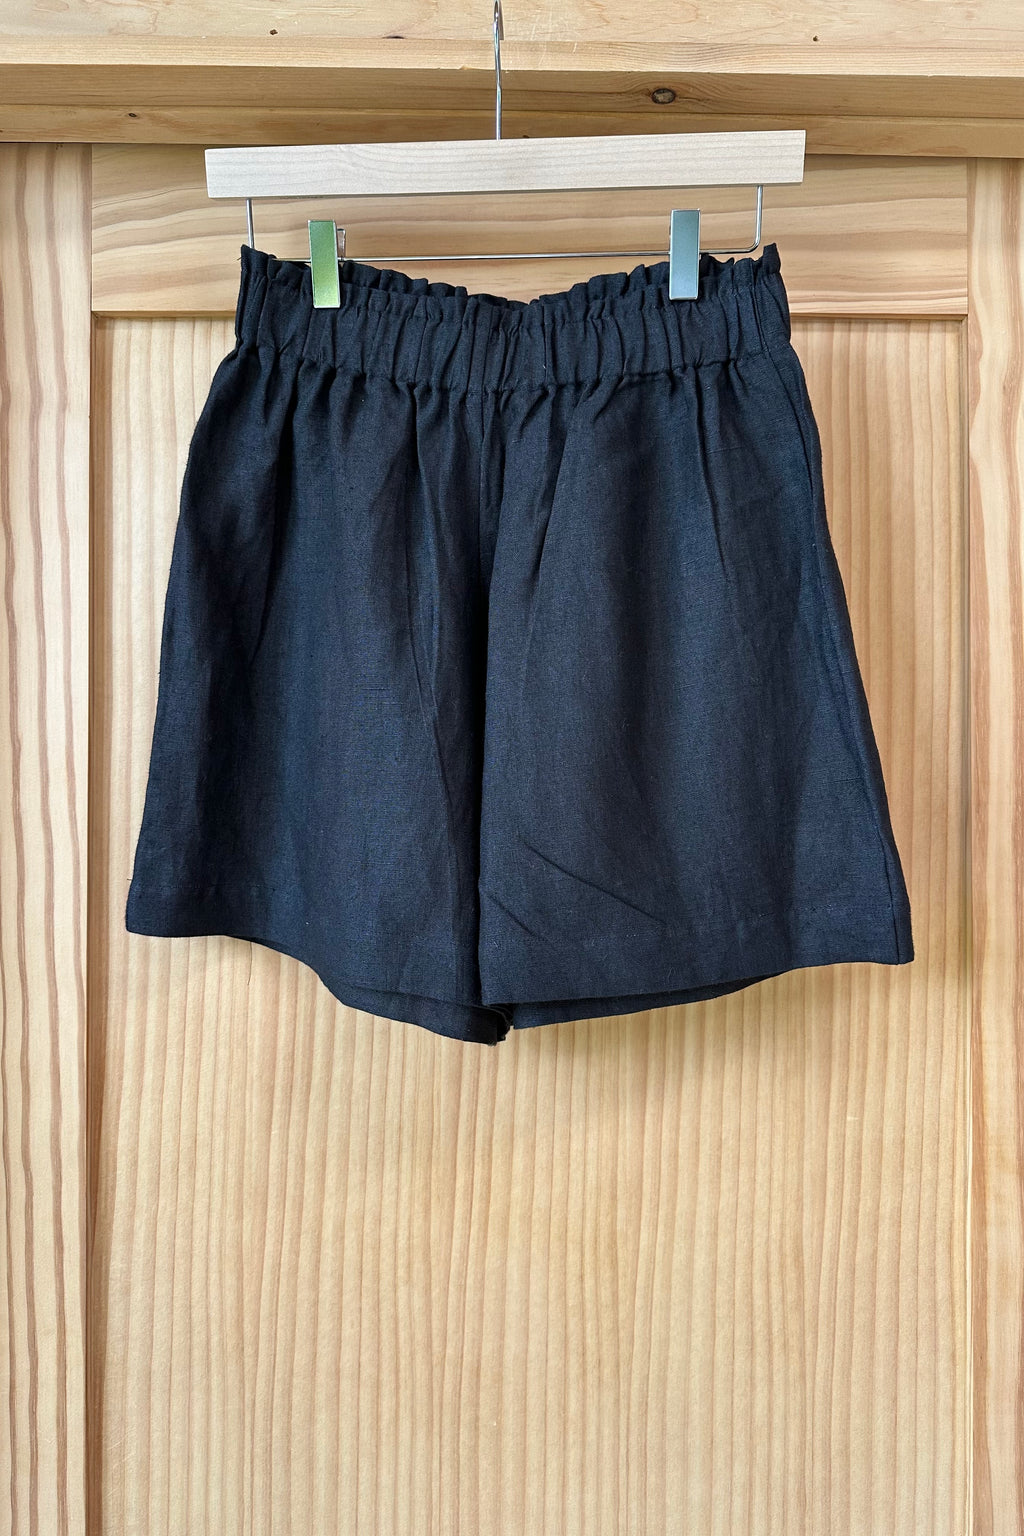 Pull On Shorts - Jet Black Linen